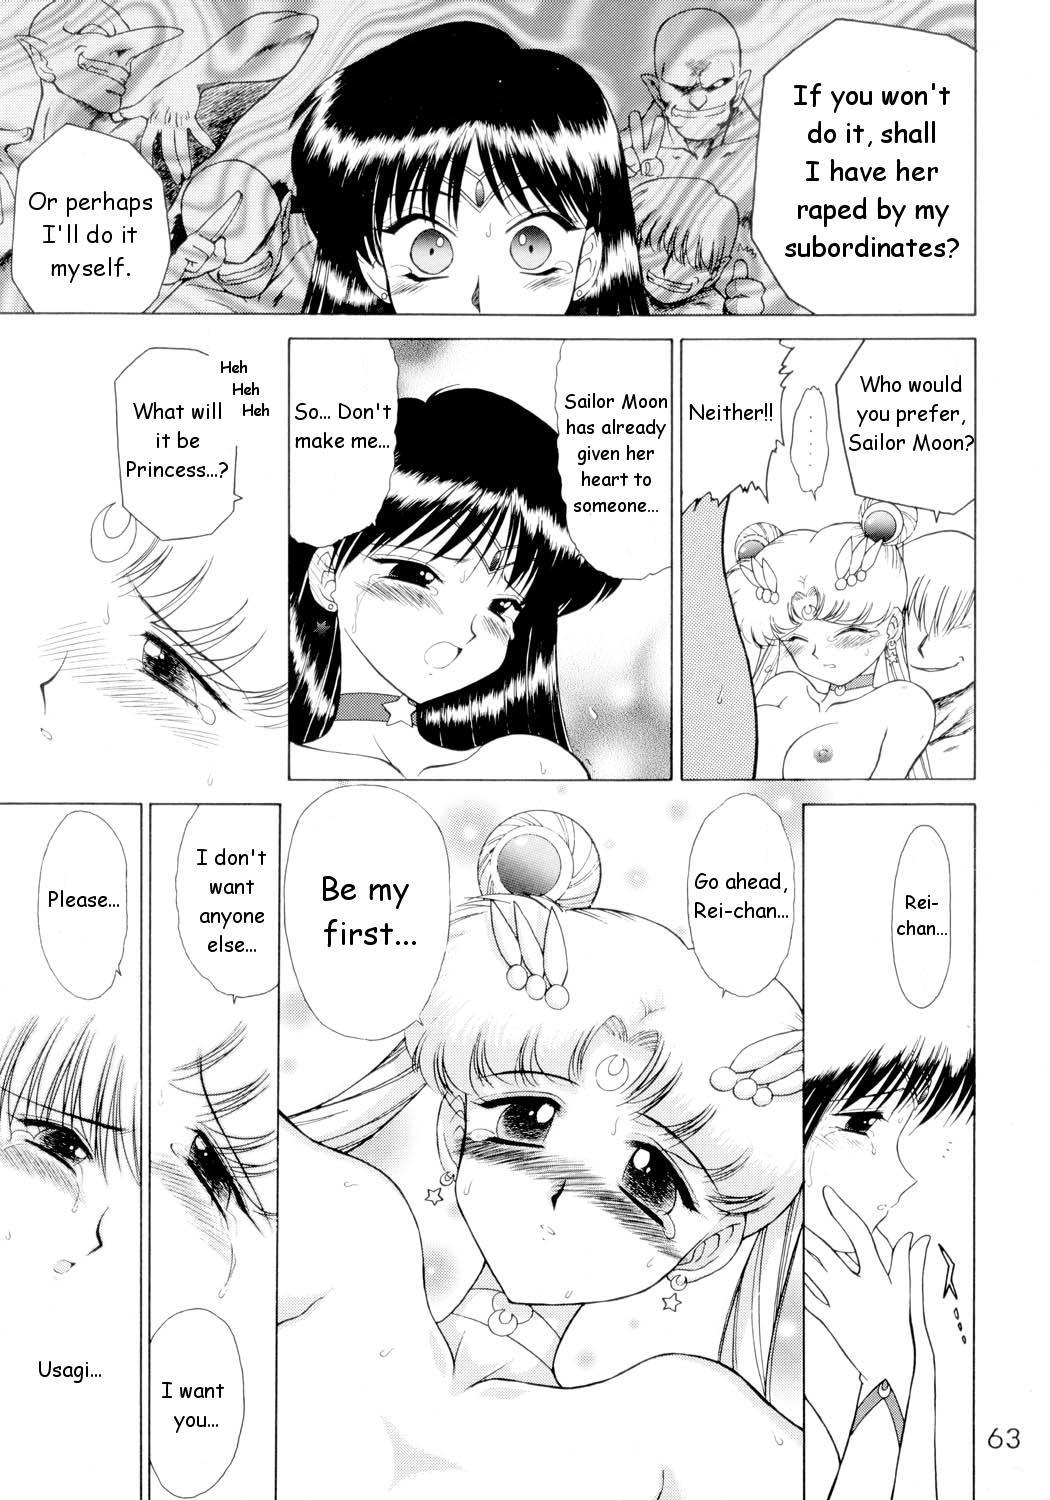 Submission Sailorstars sailor moon 61 hentai manga